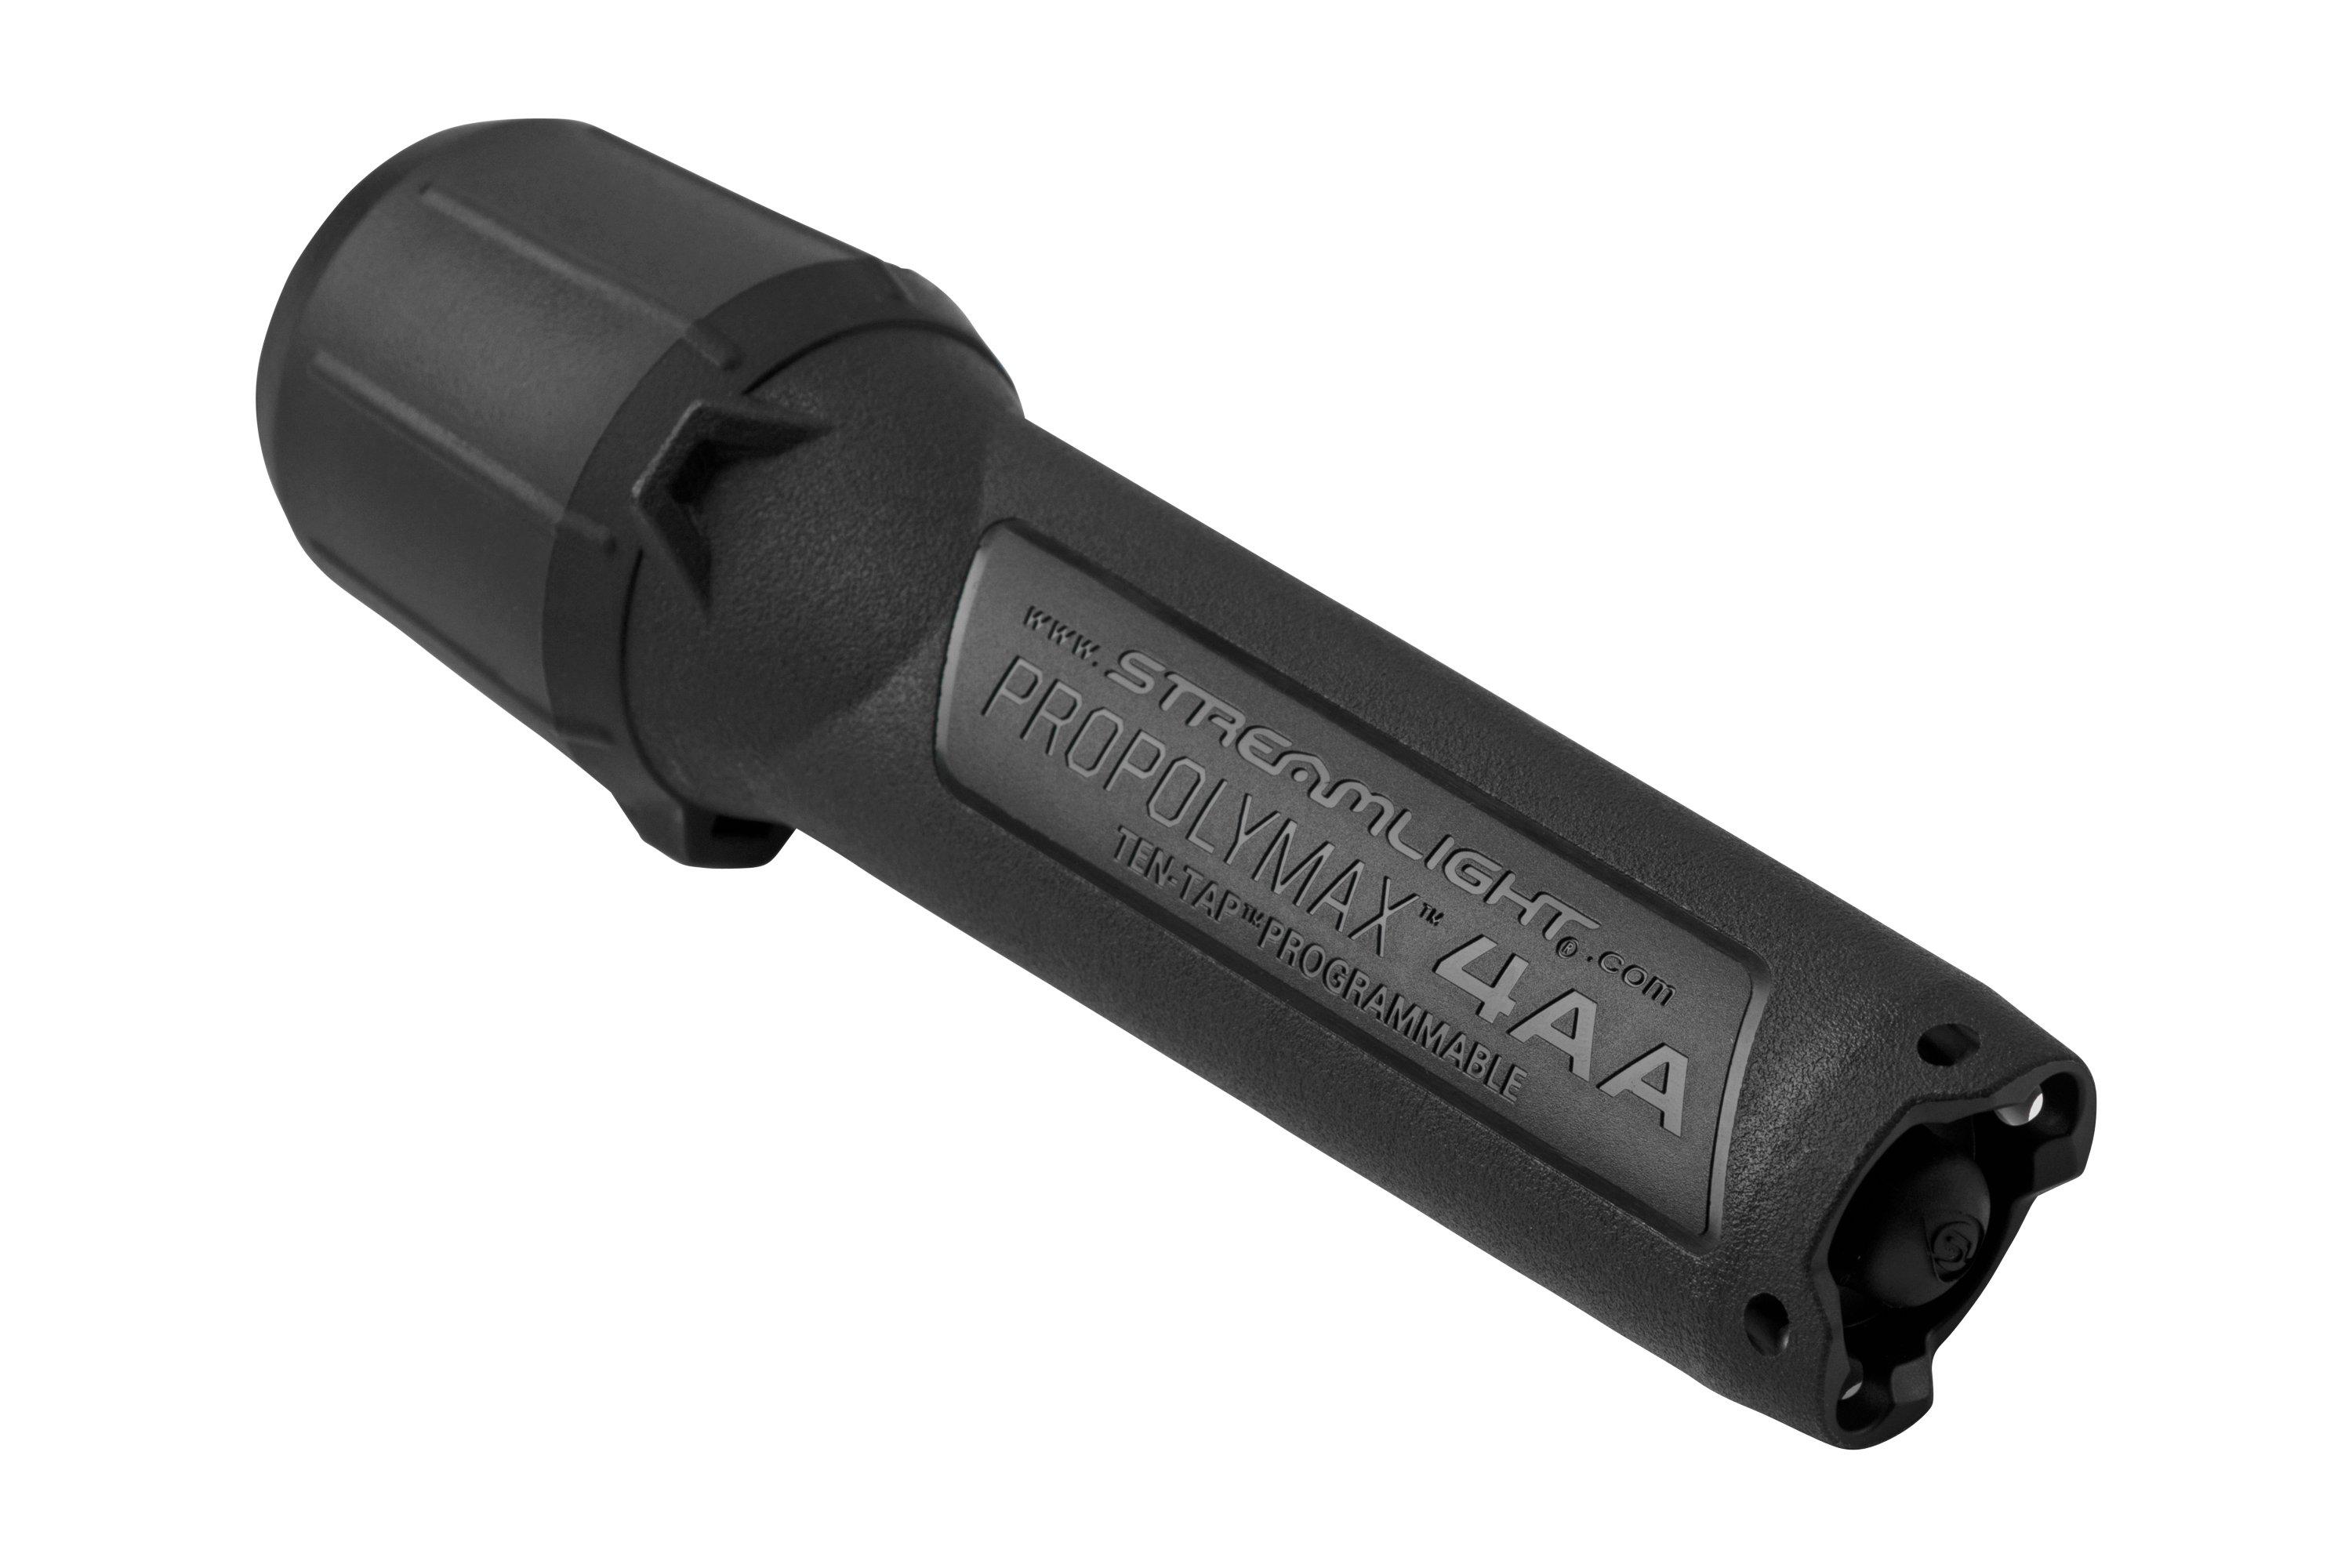 Streamlight Propolymax 4AA, noir, lampe de poche